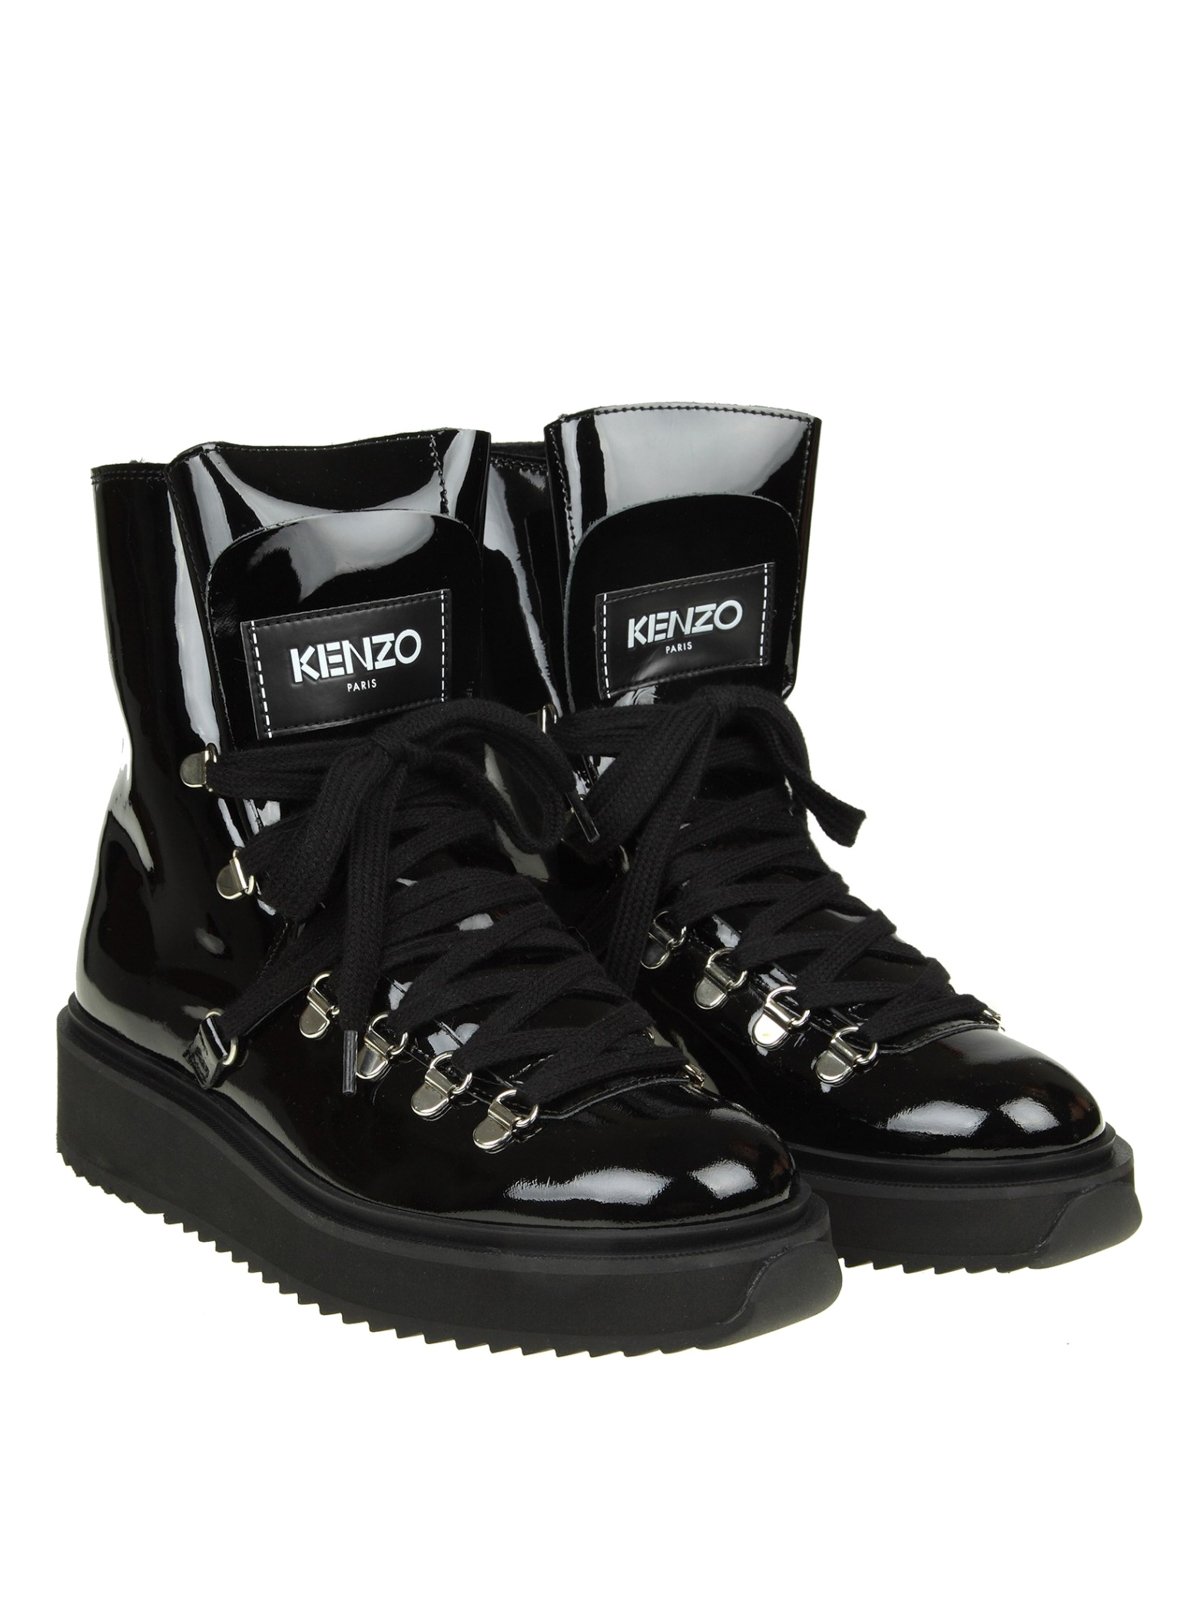 kenzo boots